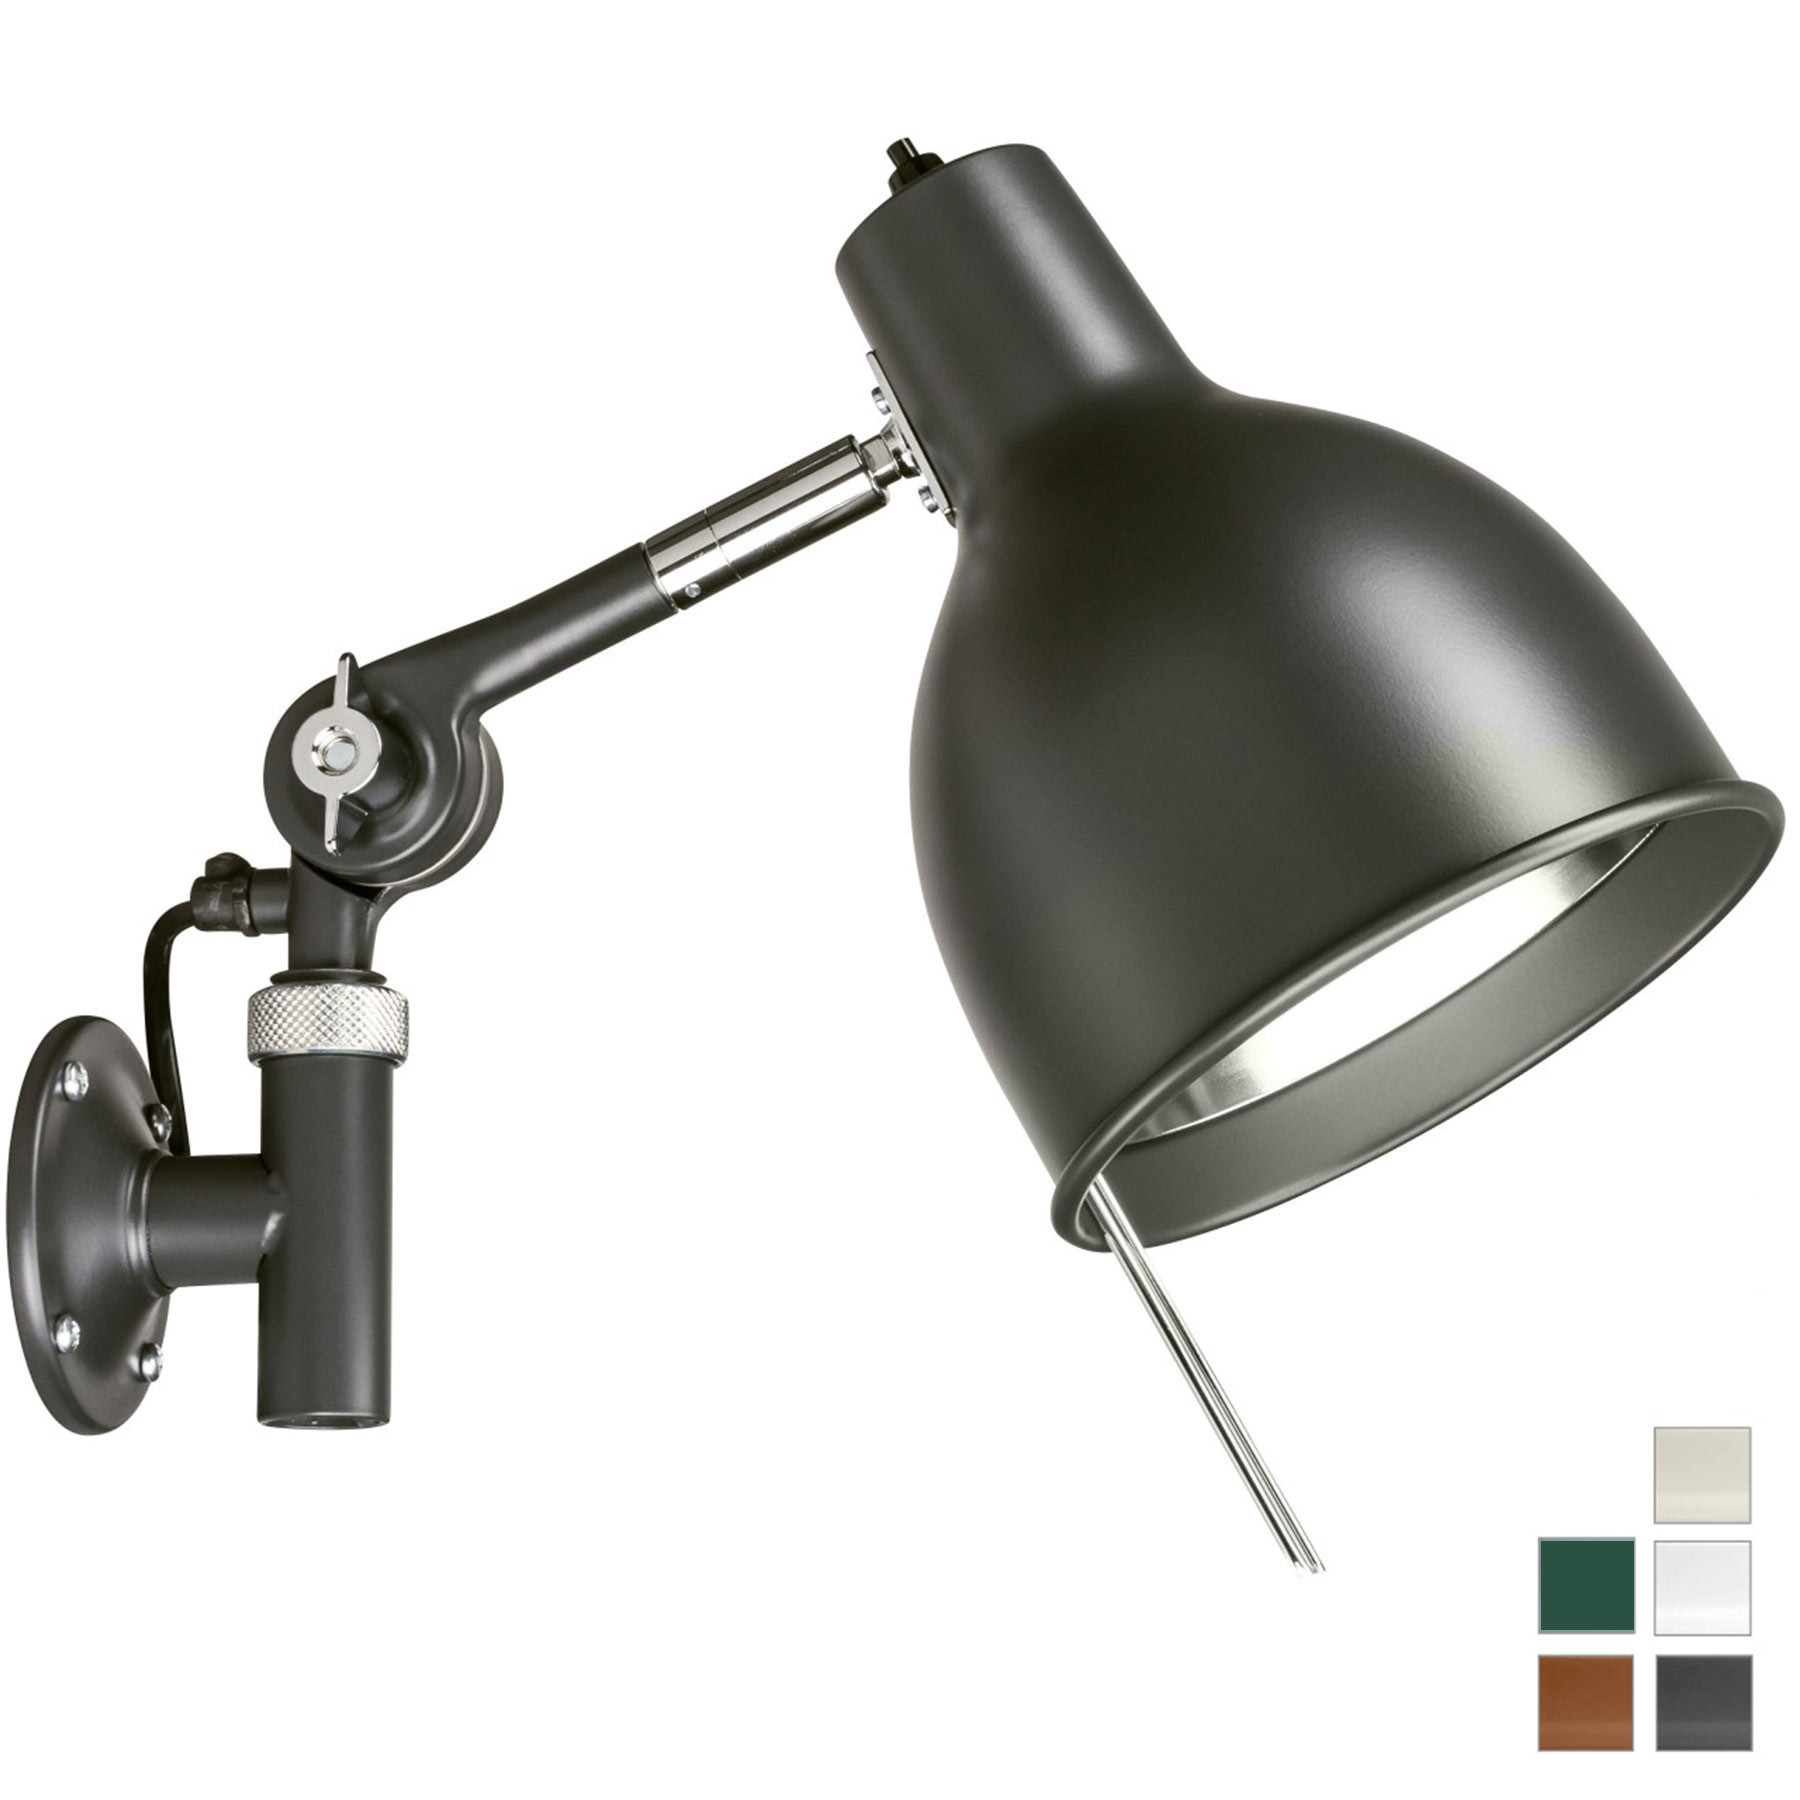 Verstellbare Werkstatt-Wandlampe aus Schweden PJ71: Robust und funktional: Die verstellbare Wandlampe Örsjö PJ71 (Version mit externer Zuleitung)